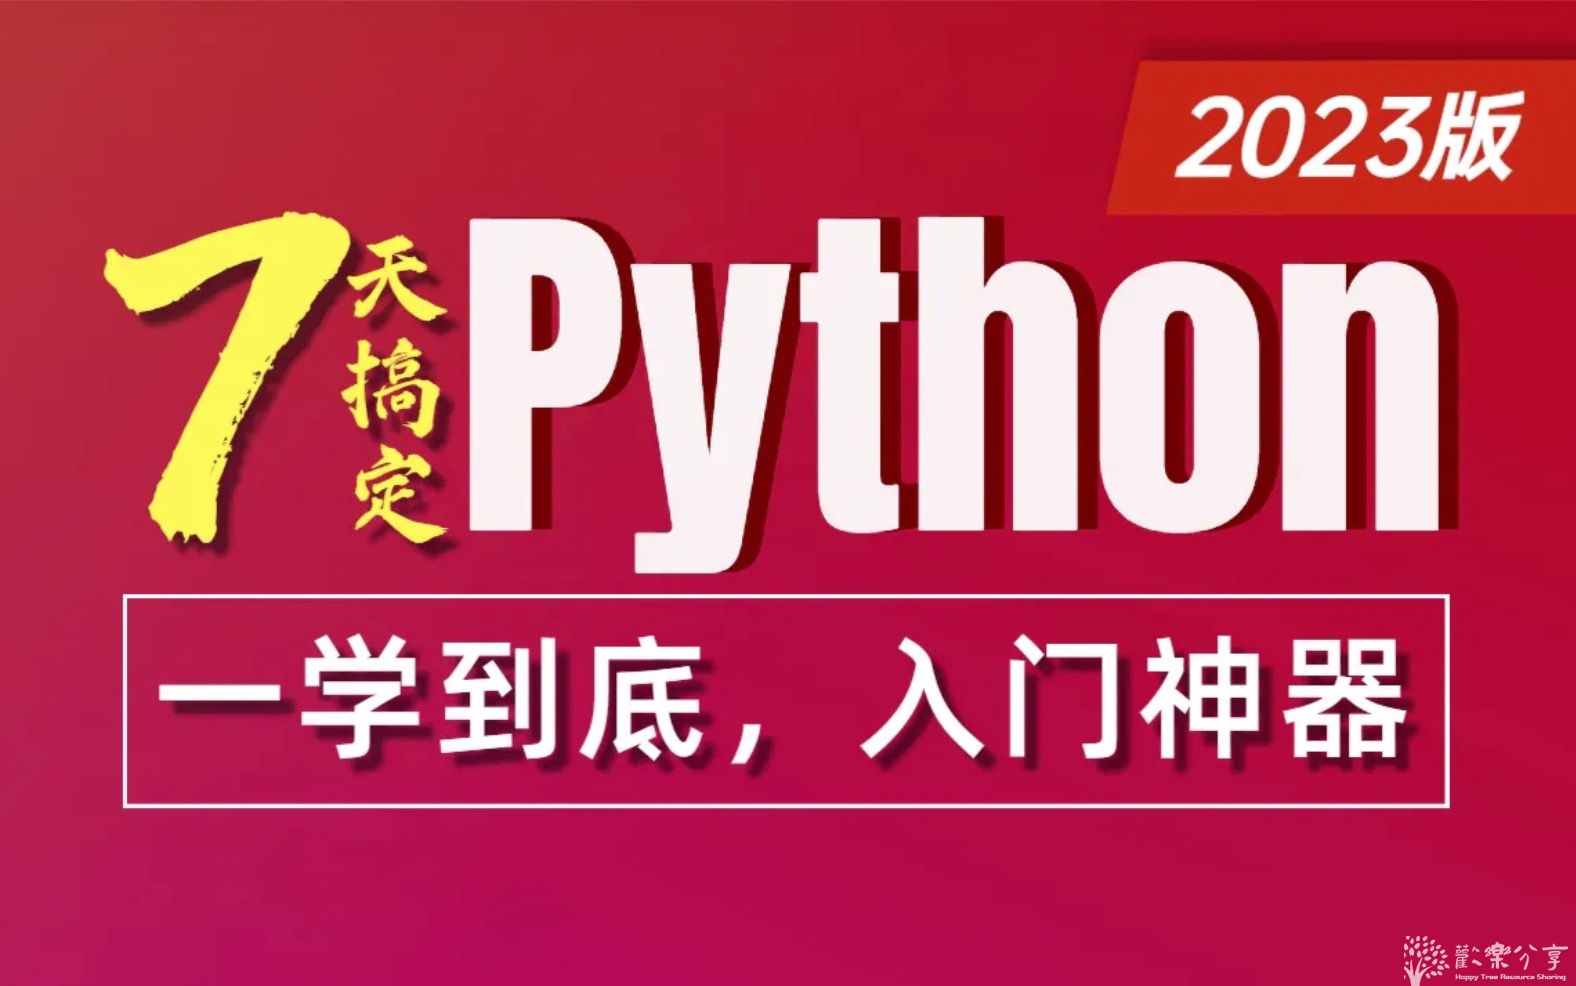 全网最全Python零基础7天极速入门教程-Python全套视频课程